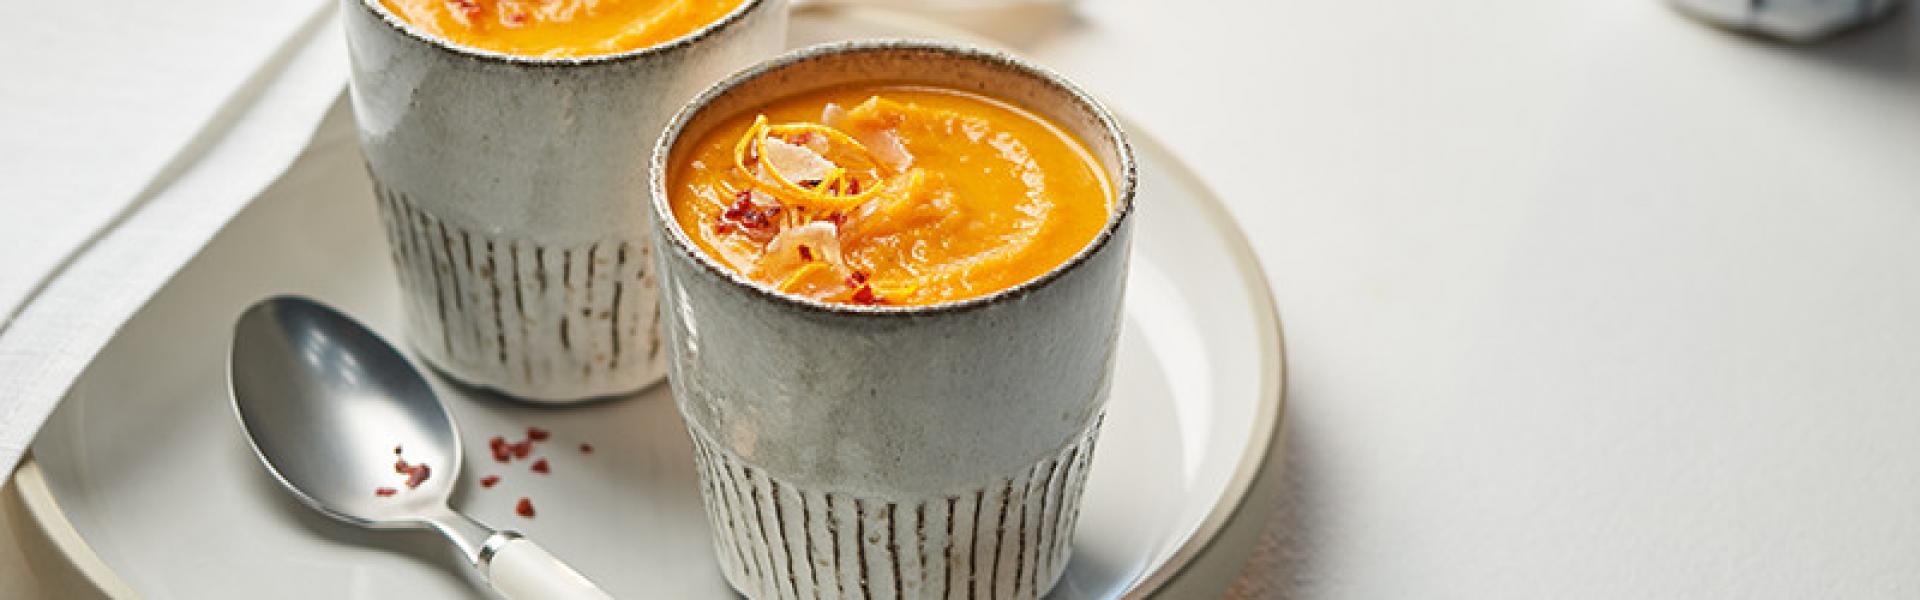 Karotten-Orangen-Suppe im Cookit | Rezepte von Simply Yummy